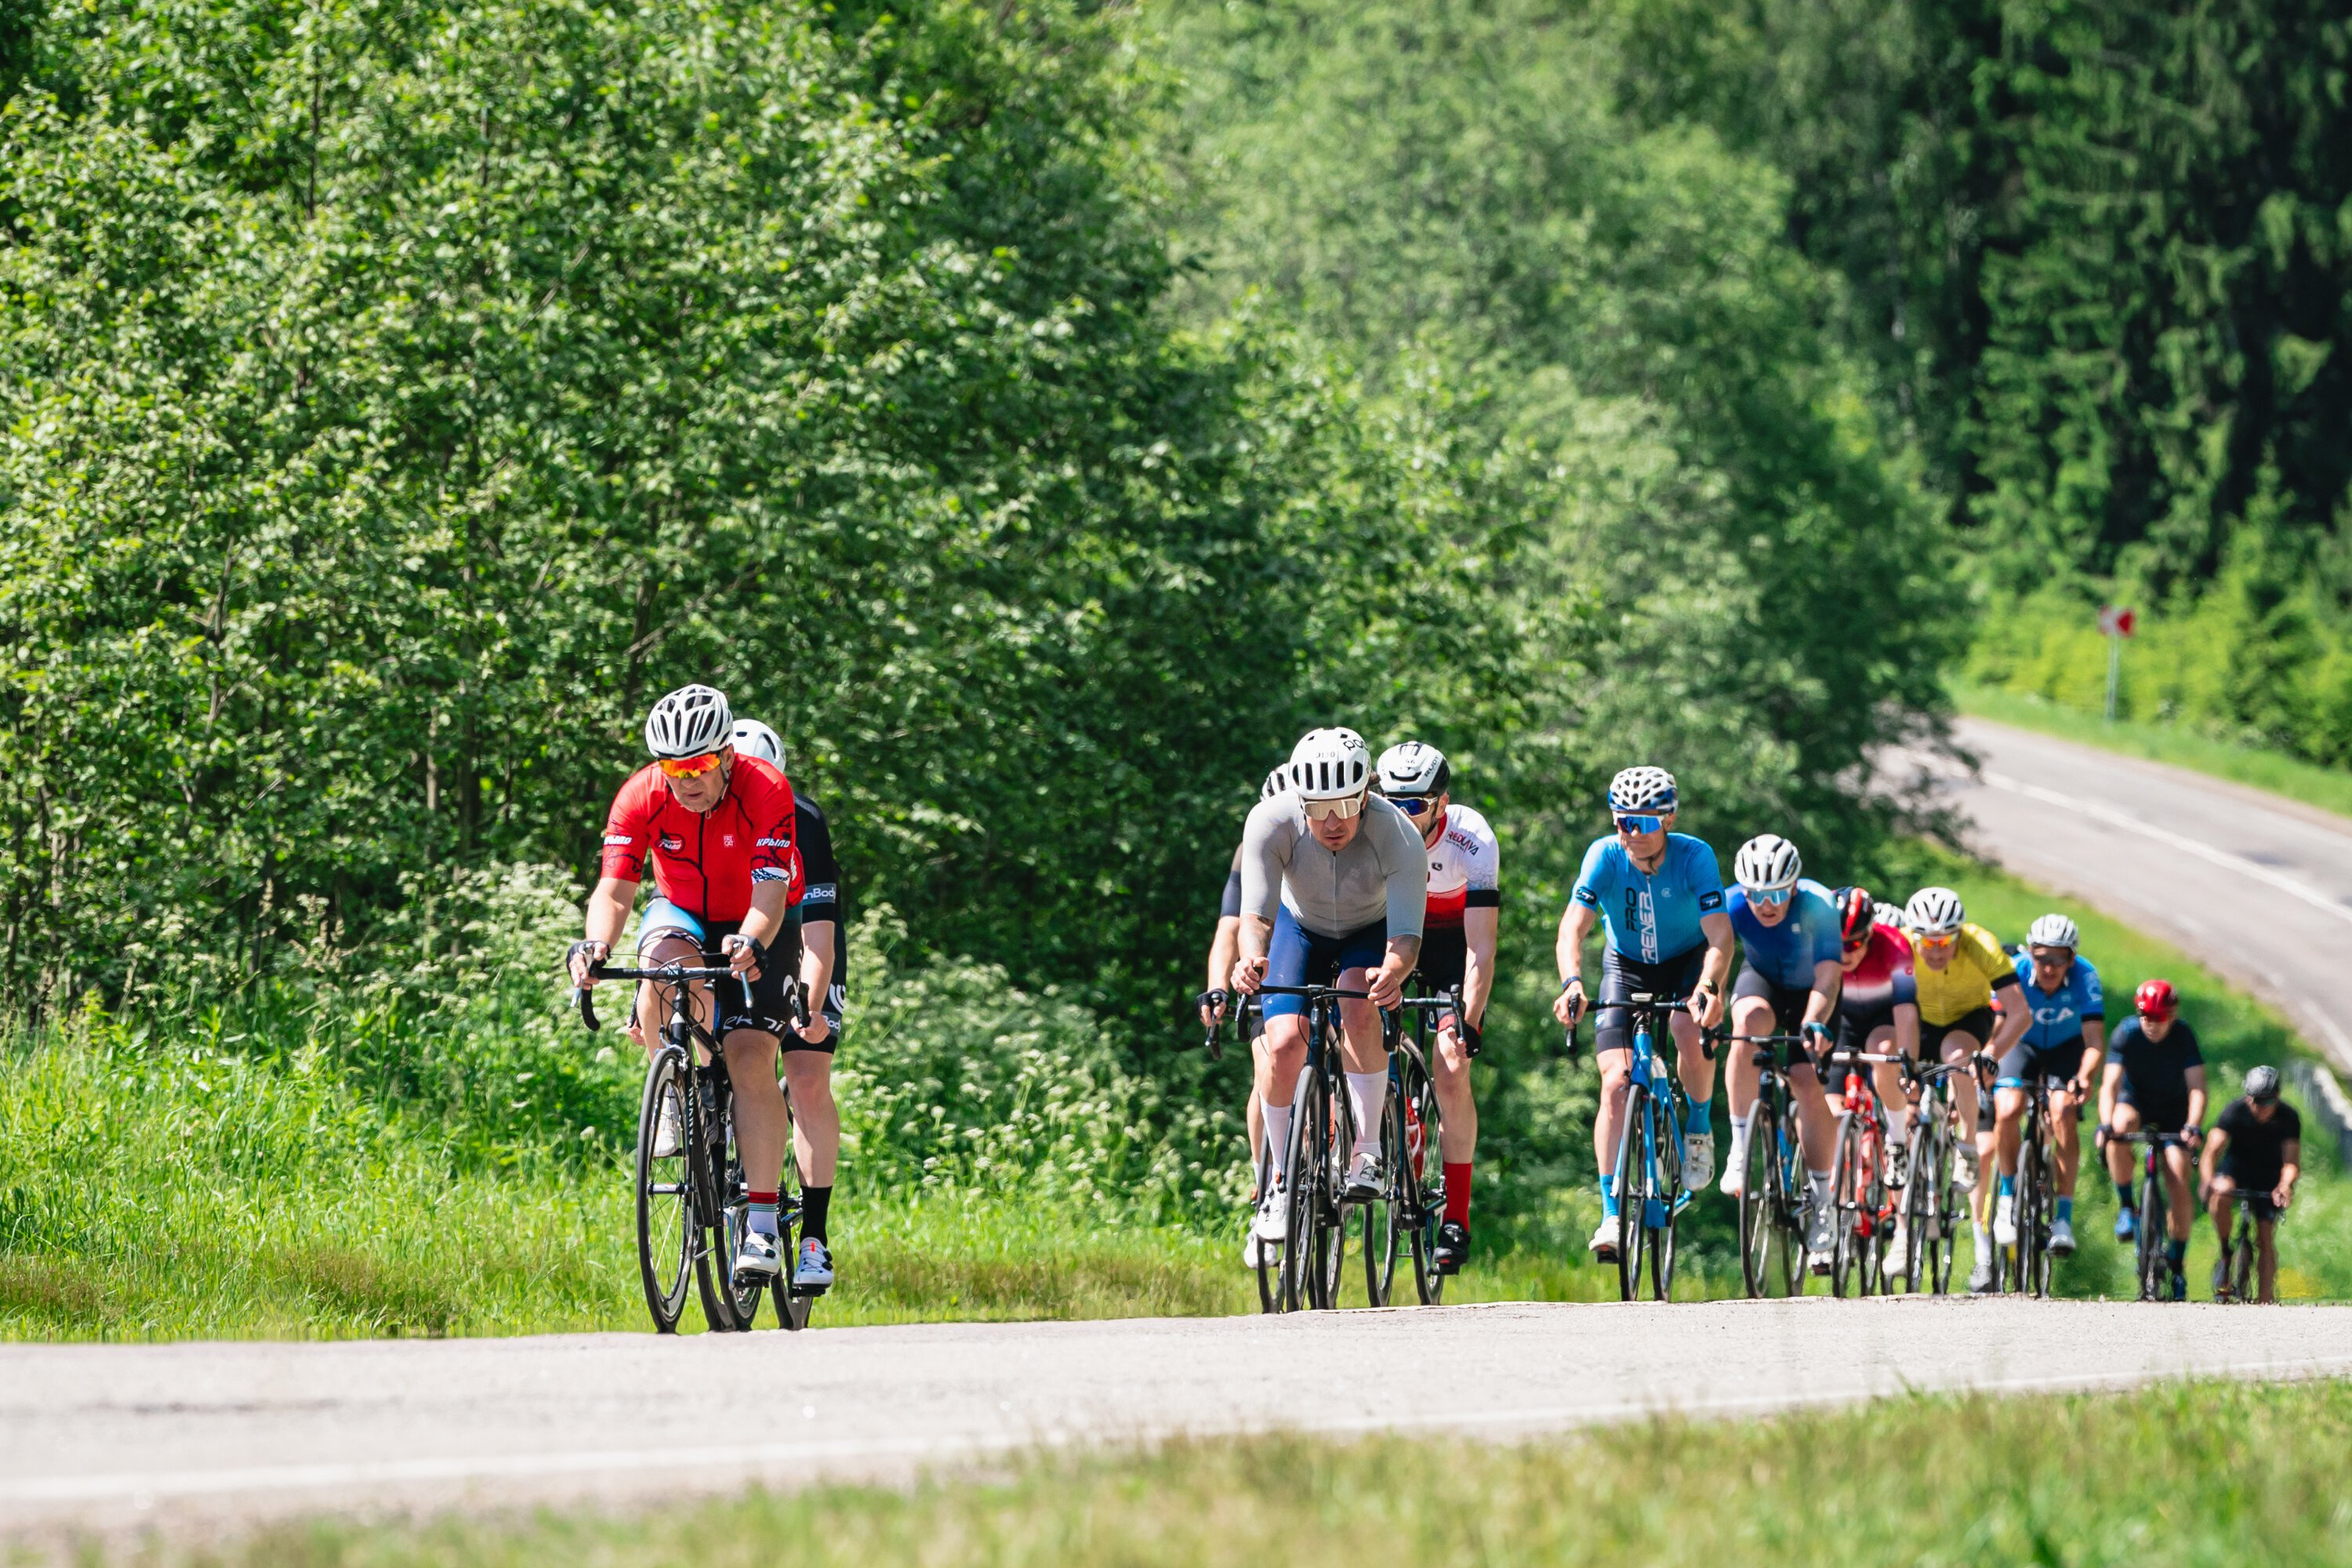 Открылась регистрация на велогонку Cyclingrace, которая пройдет 3 и 4 августа в окрестностях города Руза в Московской области